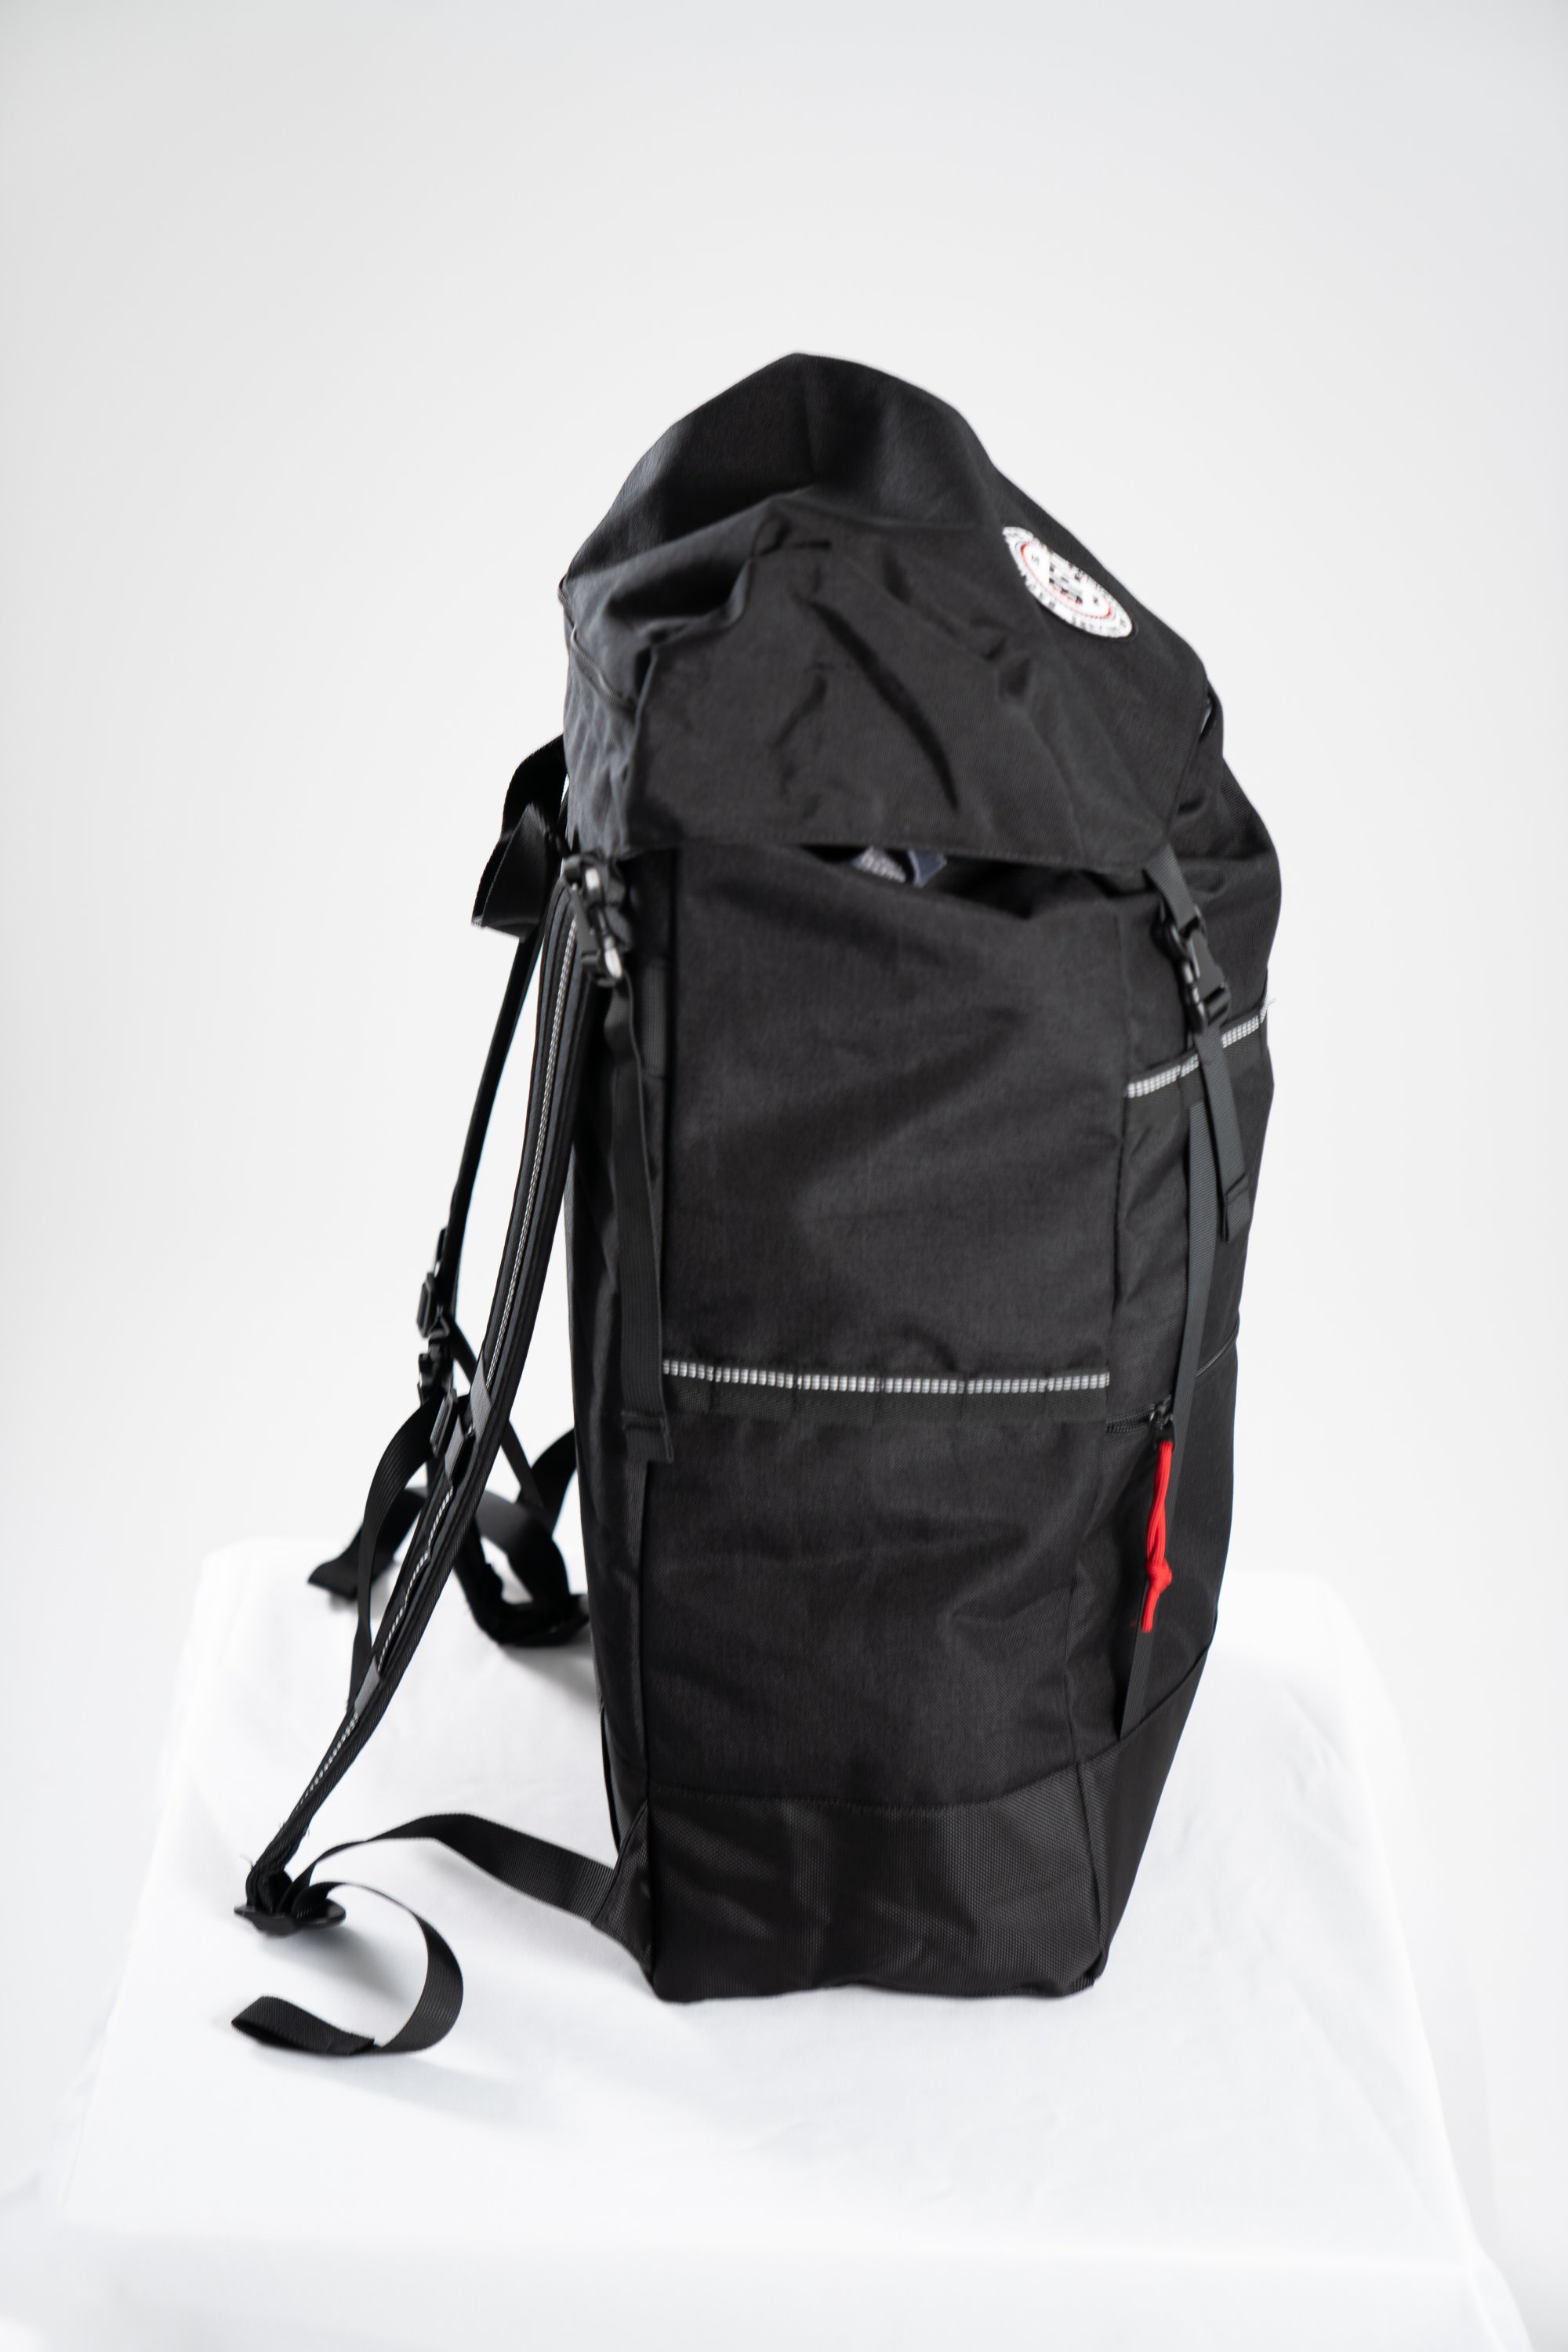 Shop — Backpacks For Life